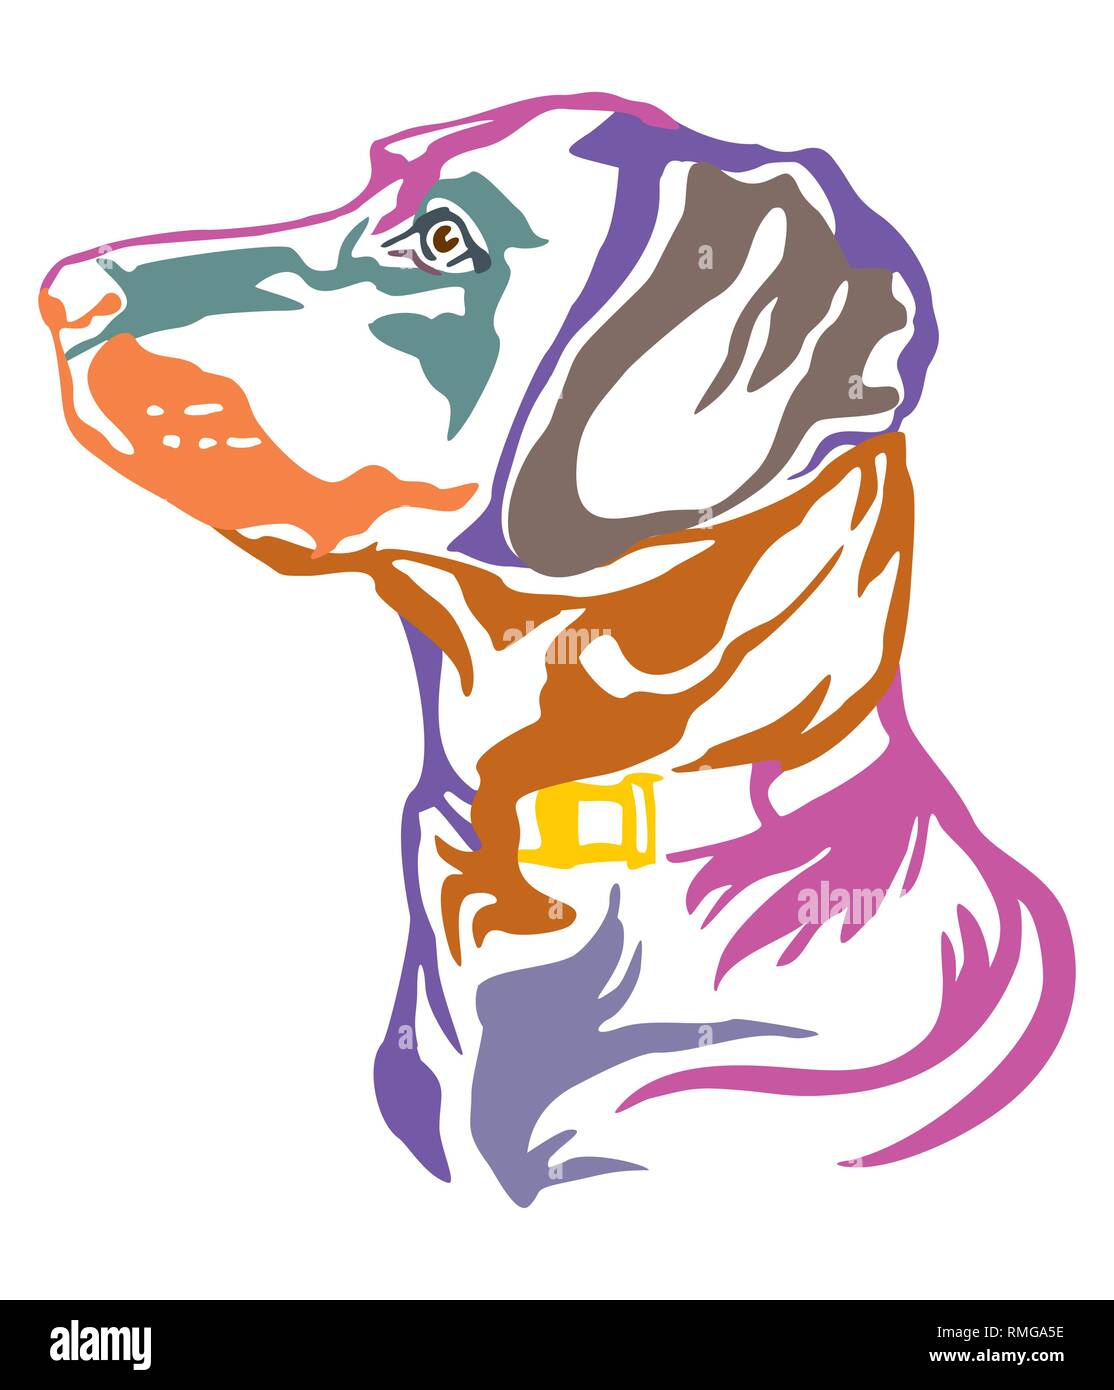 Bunt dekorativ Umrisse Portrait von Hund Labrador Retriever Suche im Profil, Vector Illustration in verschiedenen Farben isoliert auf weißem backgroun Stock Vektor